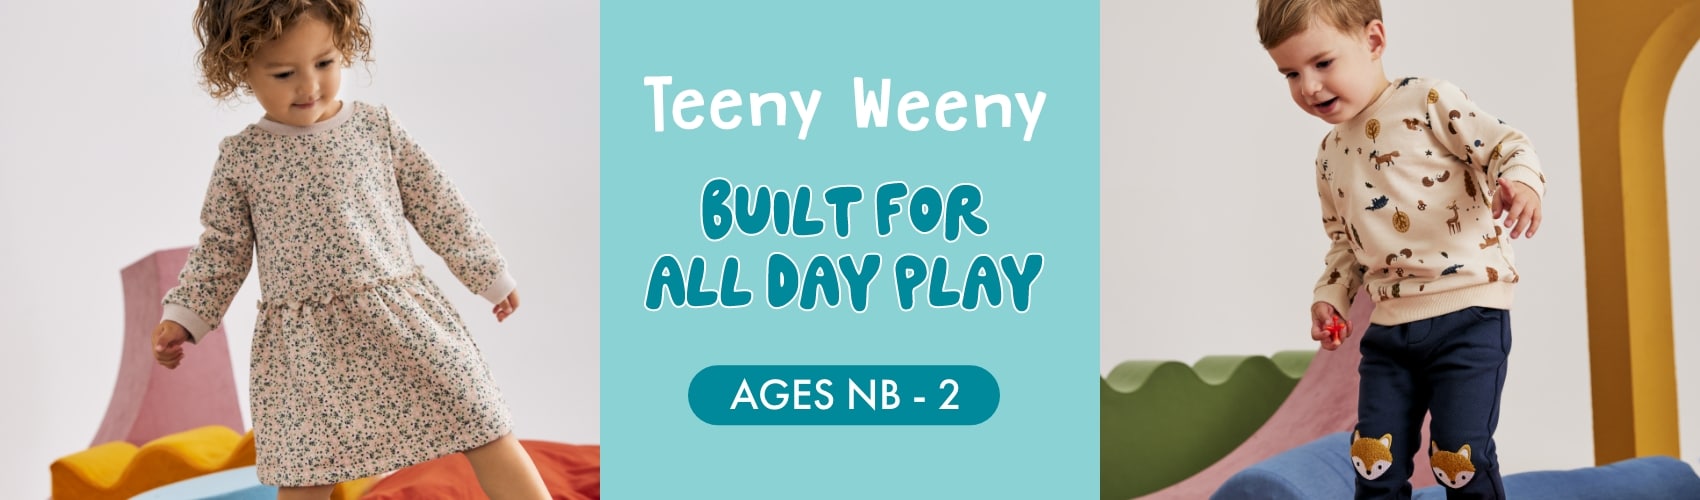 Teeny Weeny 